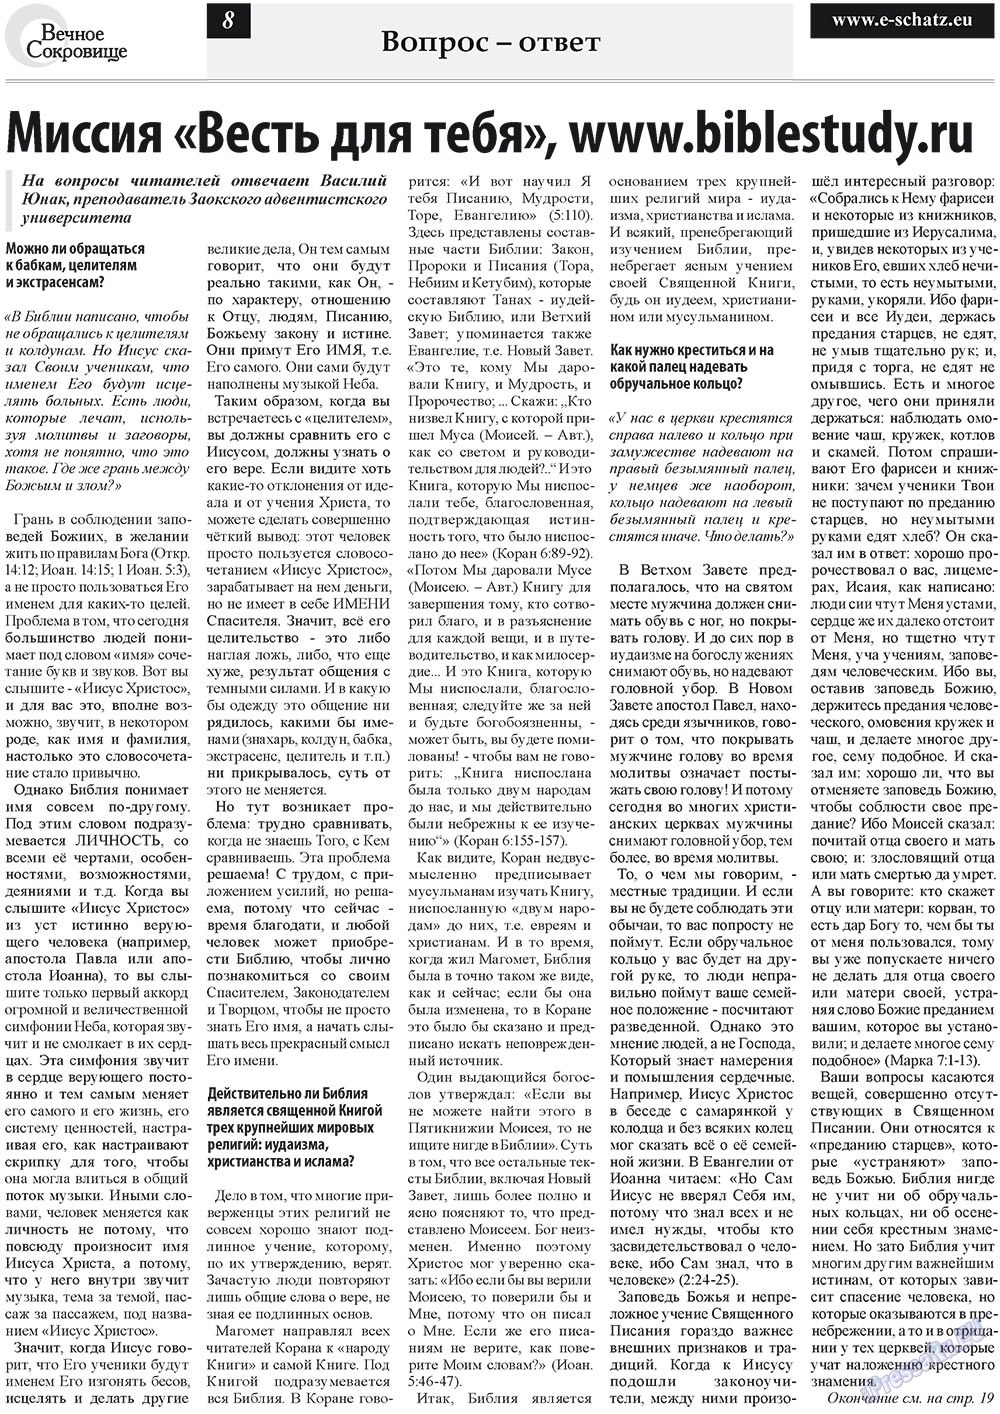 Вечное сокровище, газета. 2010 №4 стр.8